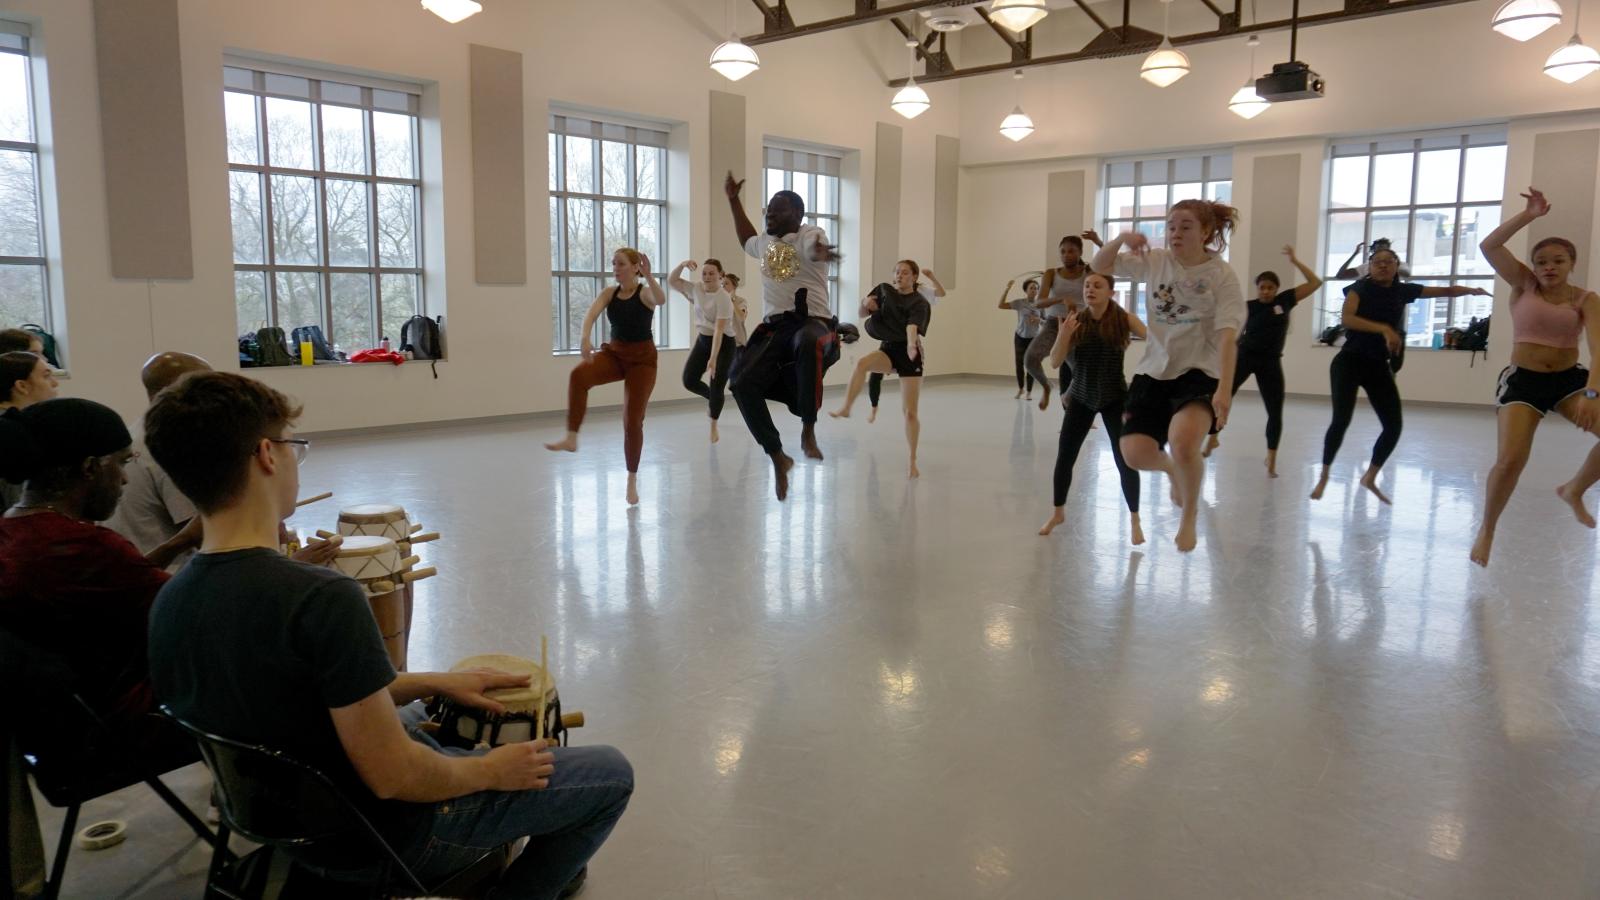 Dancers in a studio